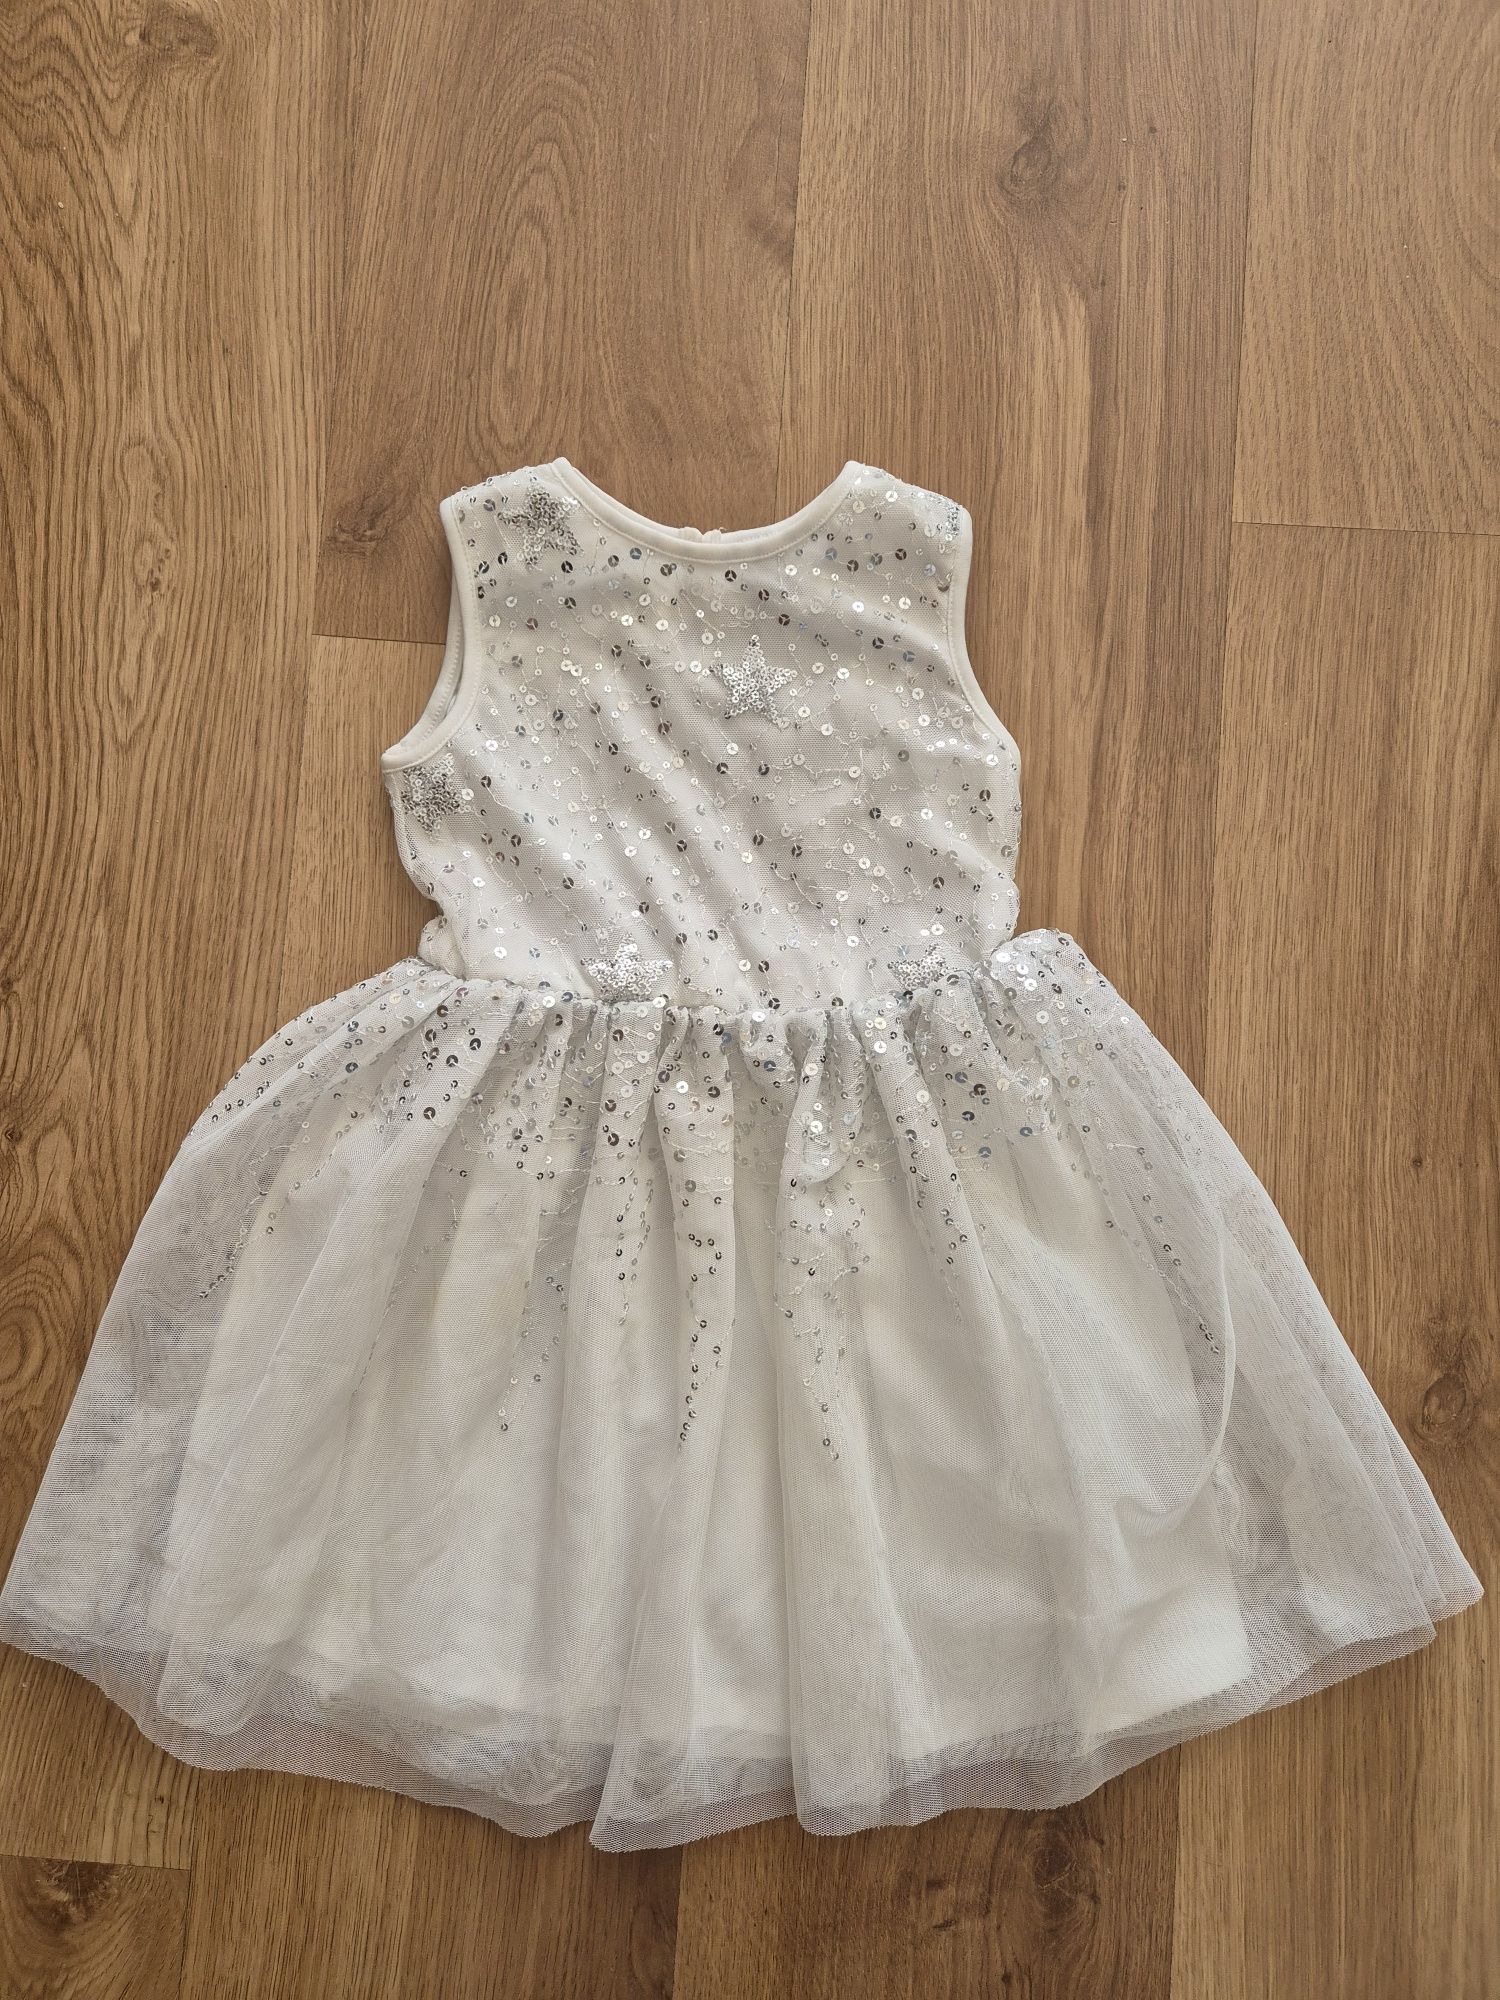 Biała elegancka sukienka komunia święta rozmiar 110